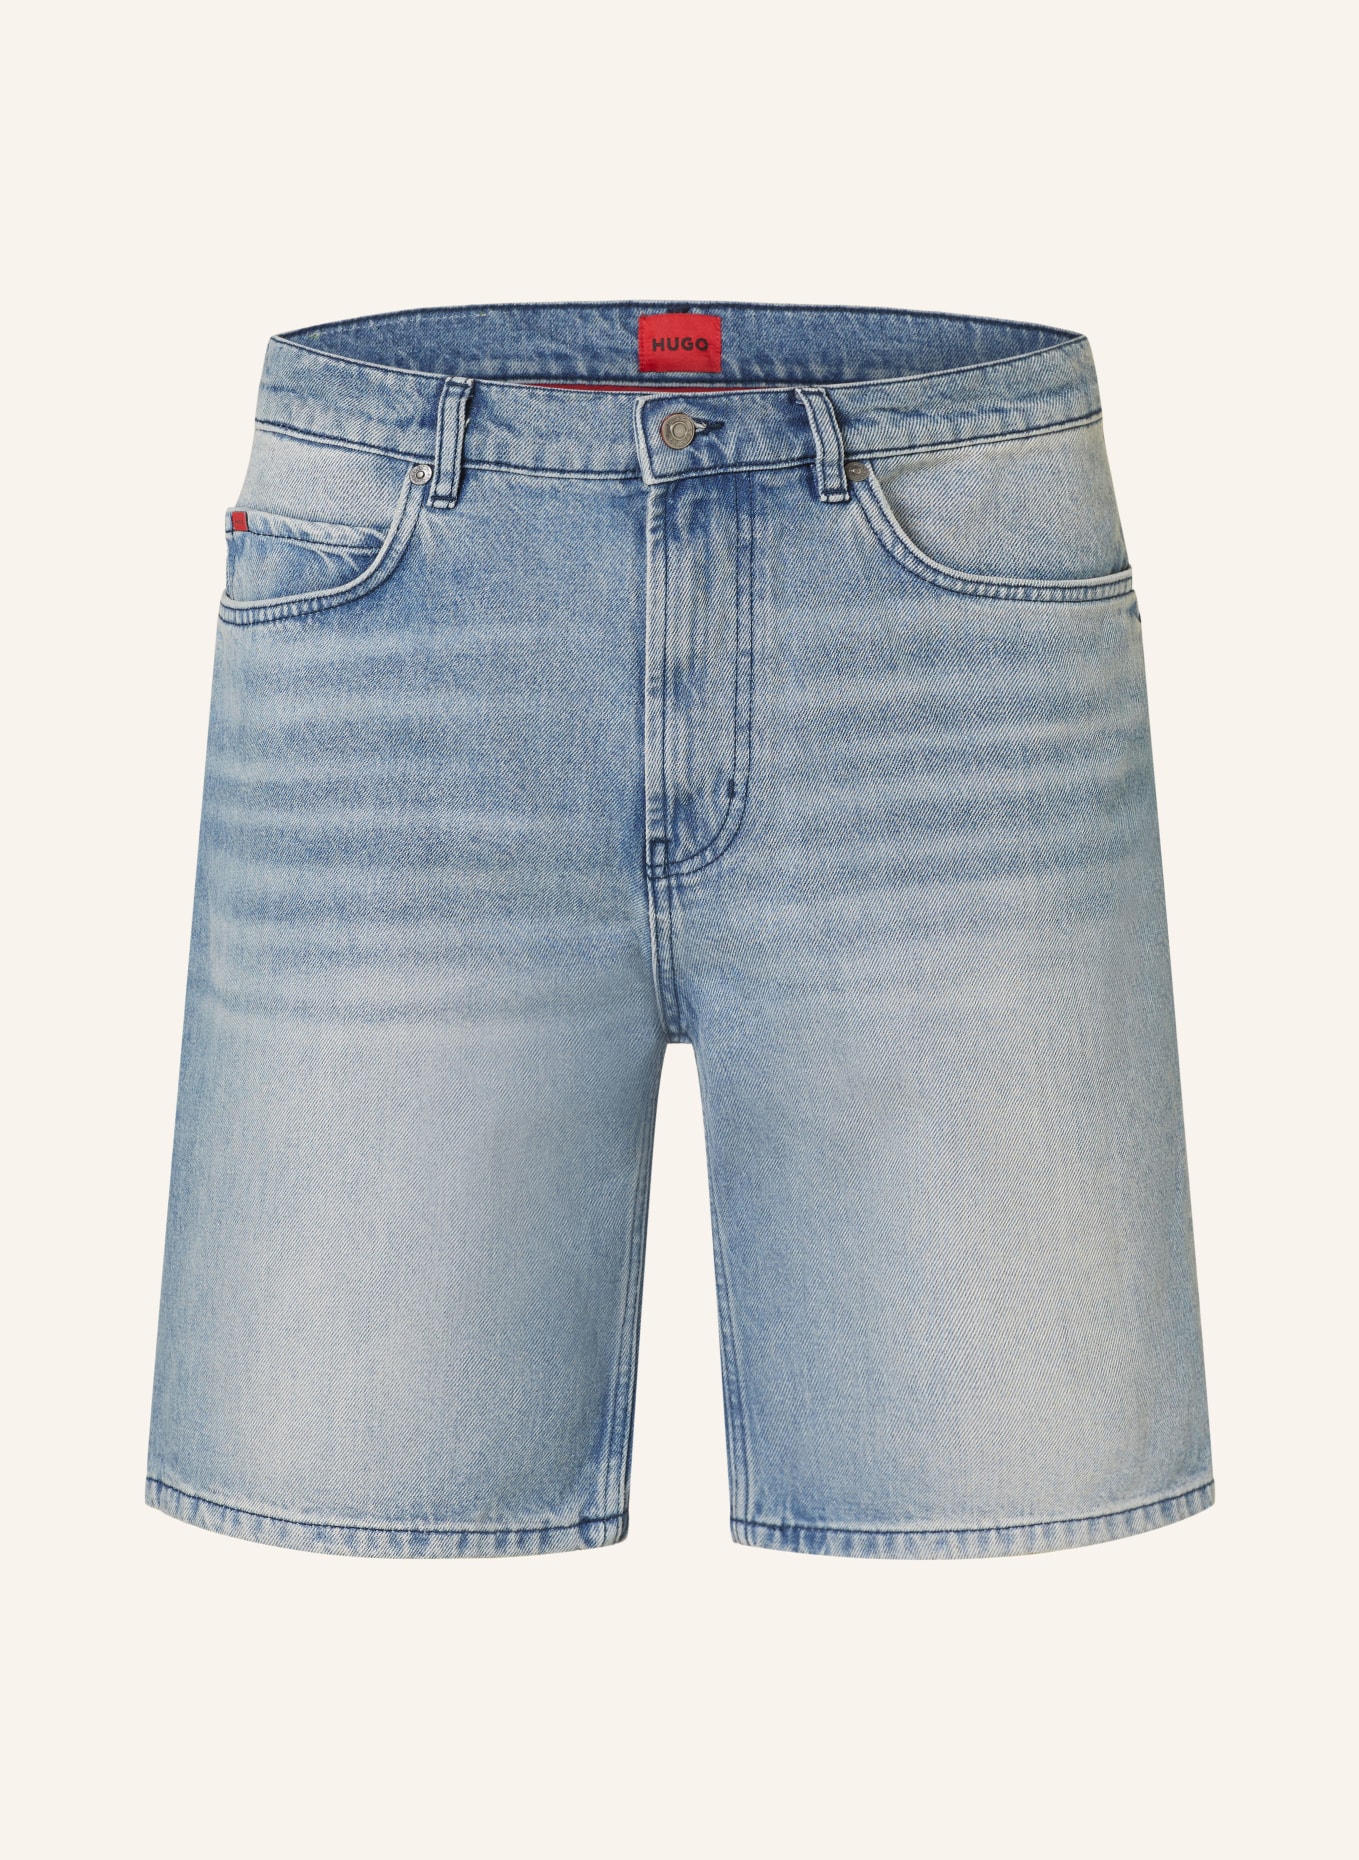 HUGO Denim shorts 446/S loose fit, Color: 422 MEDIUM BLUE (Image 1)